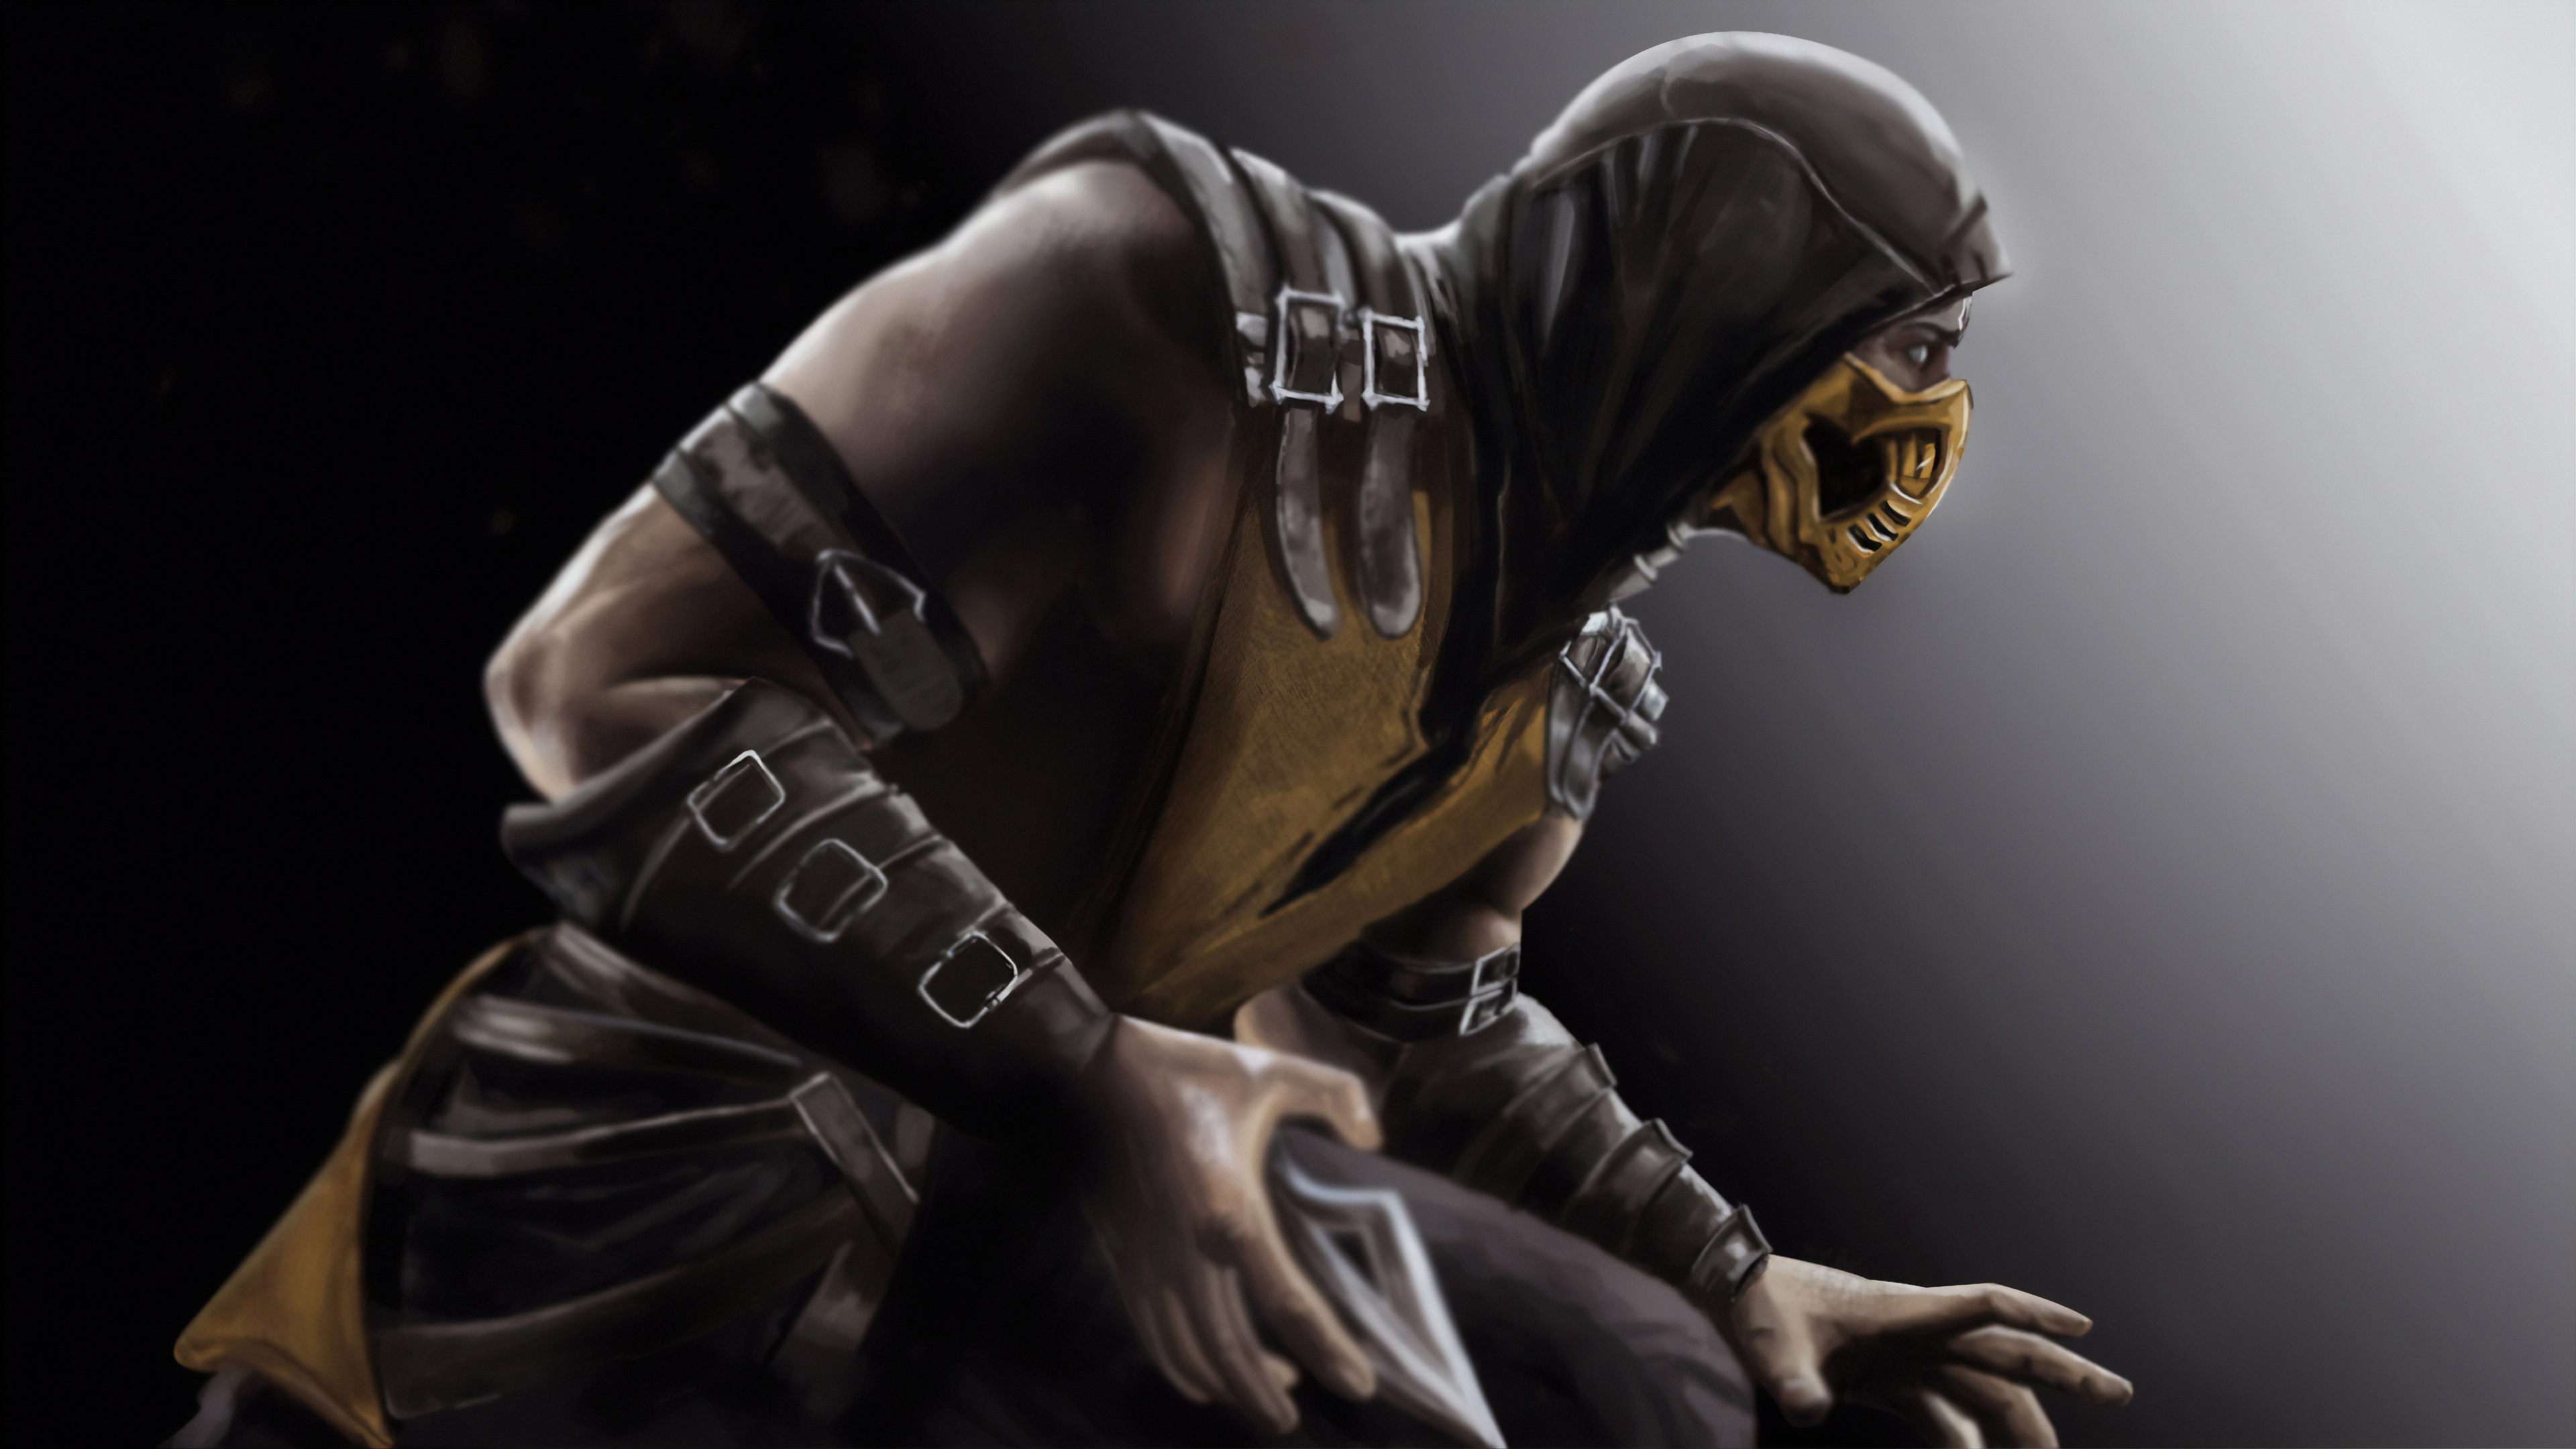 Wallpaper Scorpion Mortal Kombat x Human Darkness Fighting Game  Background  Download Free Image